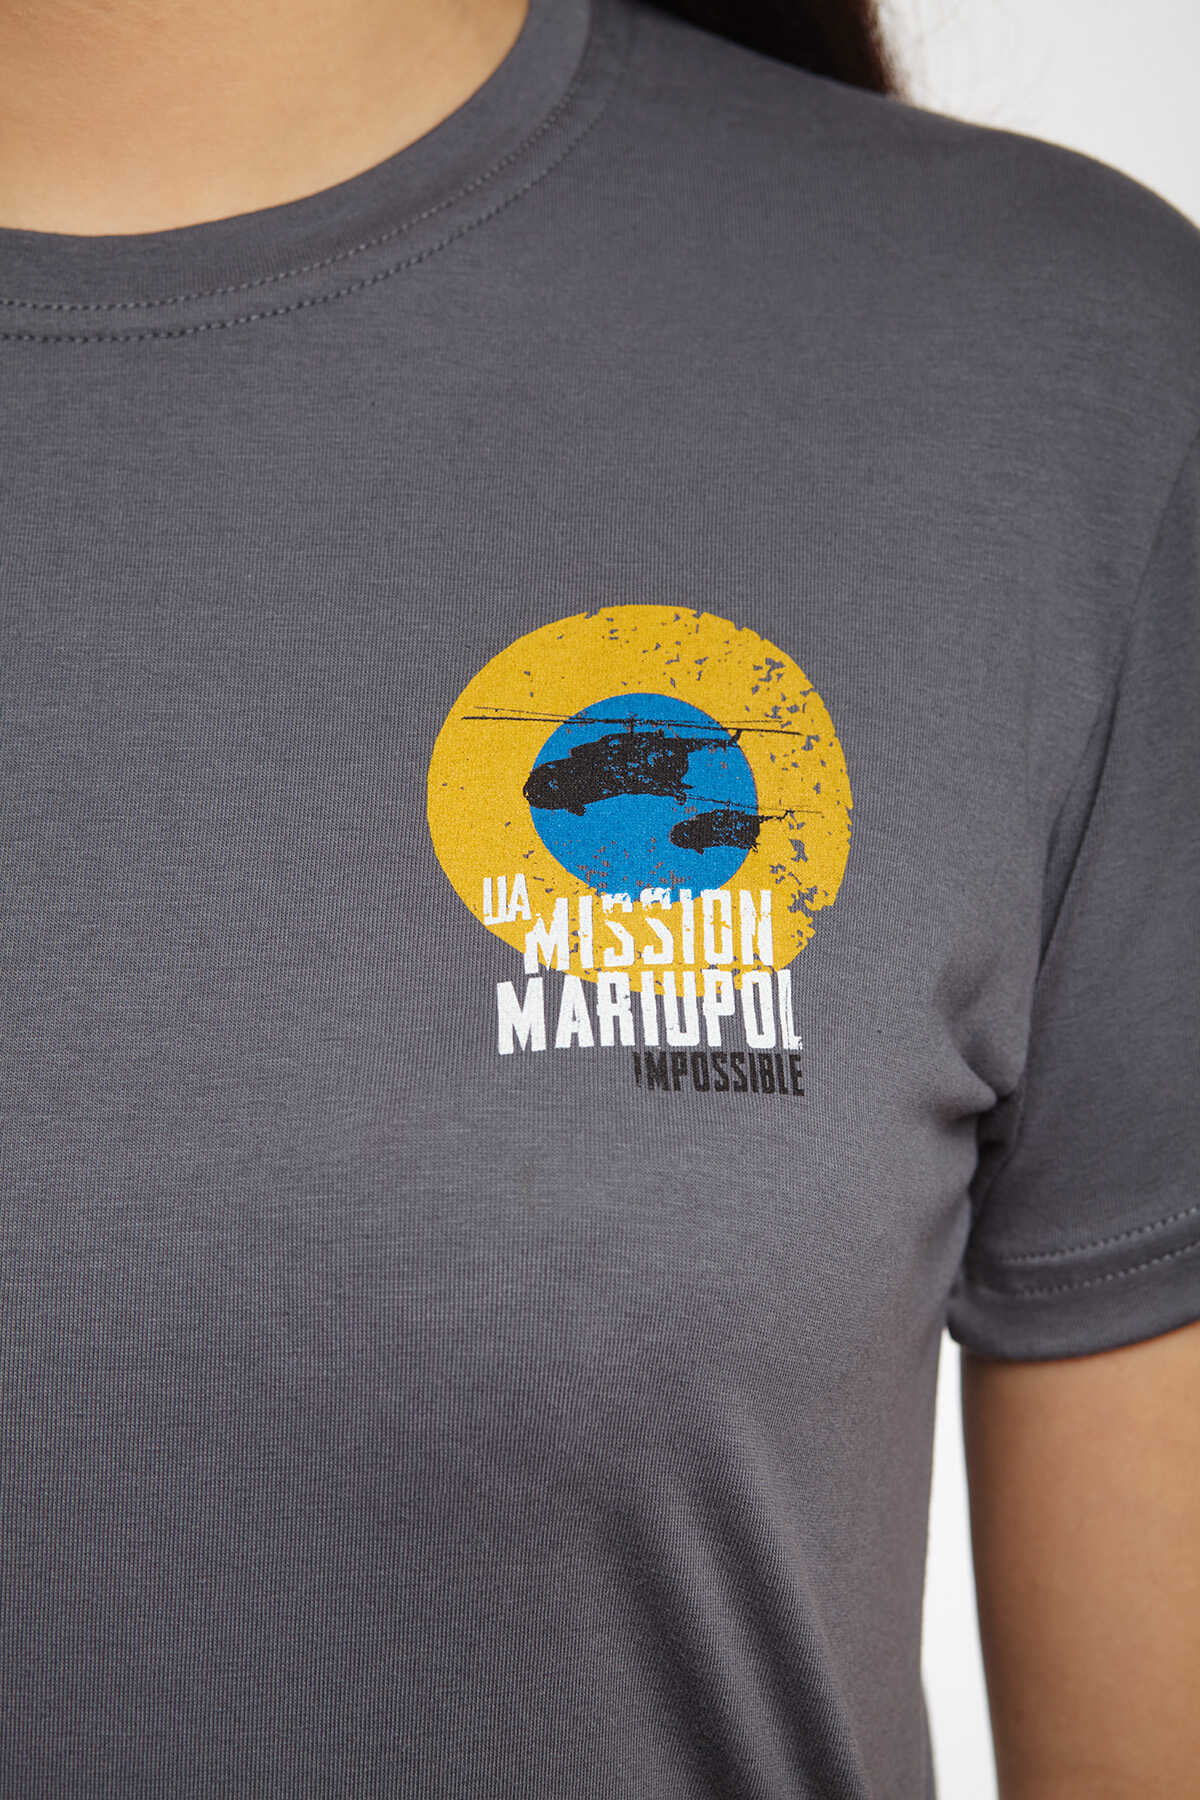 Жіноча Футболка Mission Mariupol. Колір сірий. Не варто переживати за універсальний розмір.